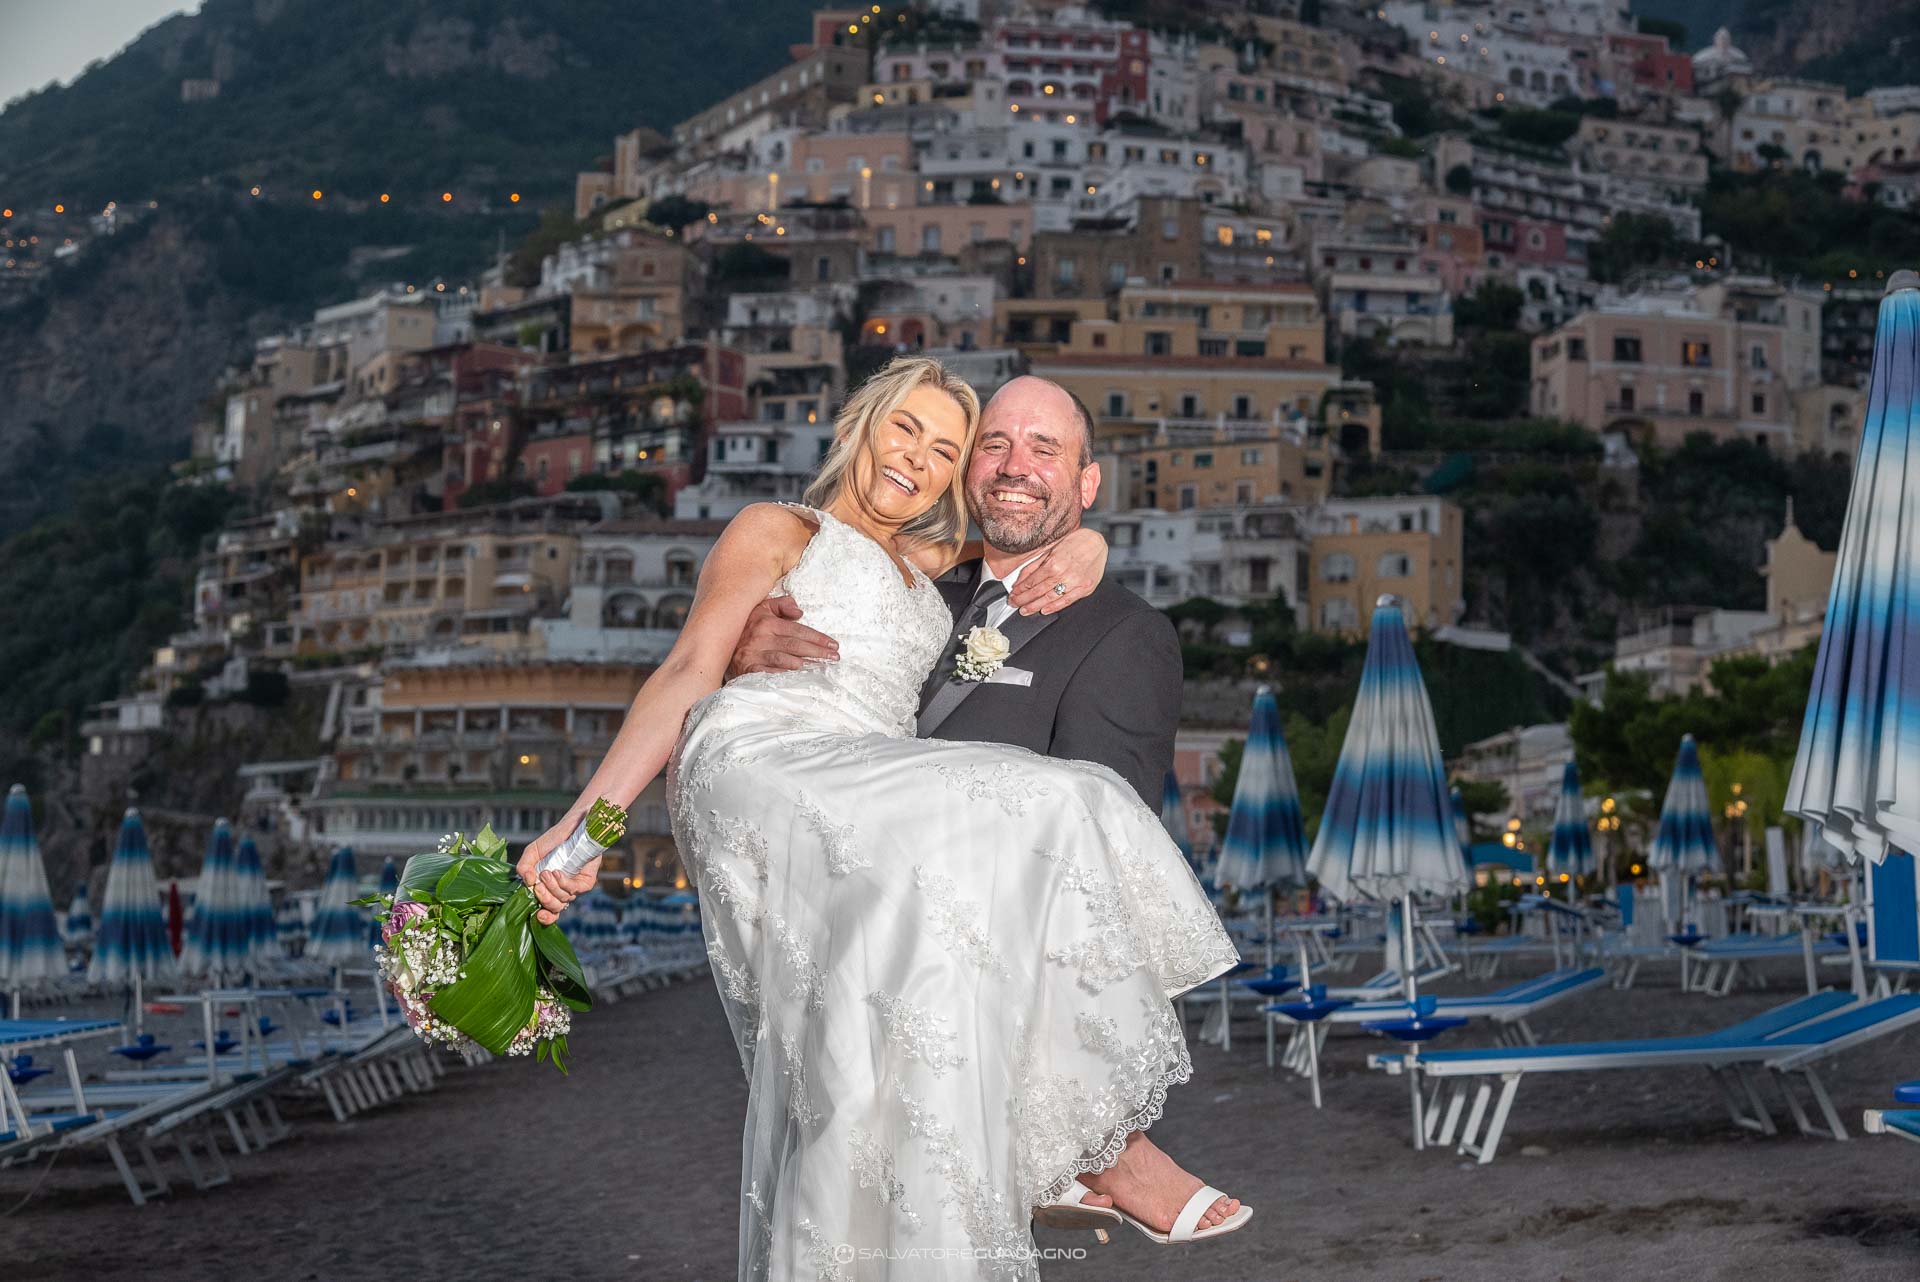 Wedding - Marriage - Portrait photography - Positano - Amalfi Coast 